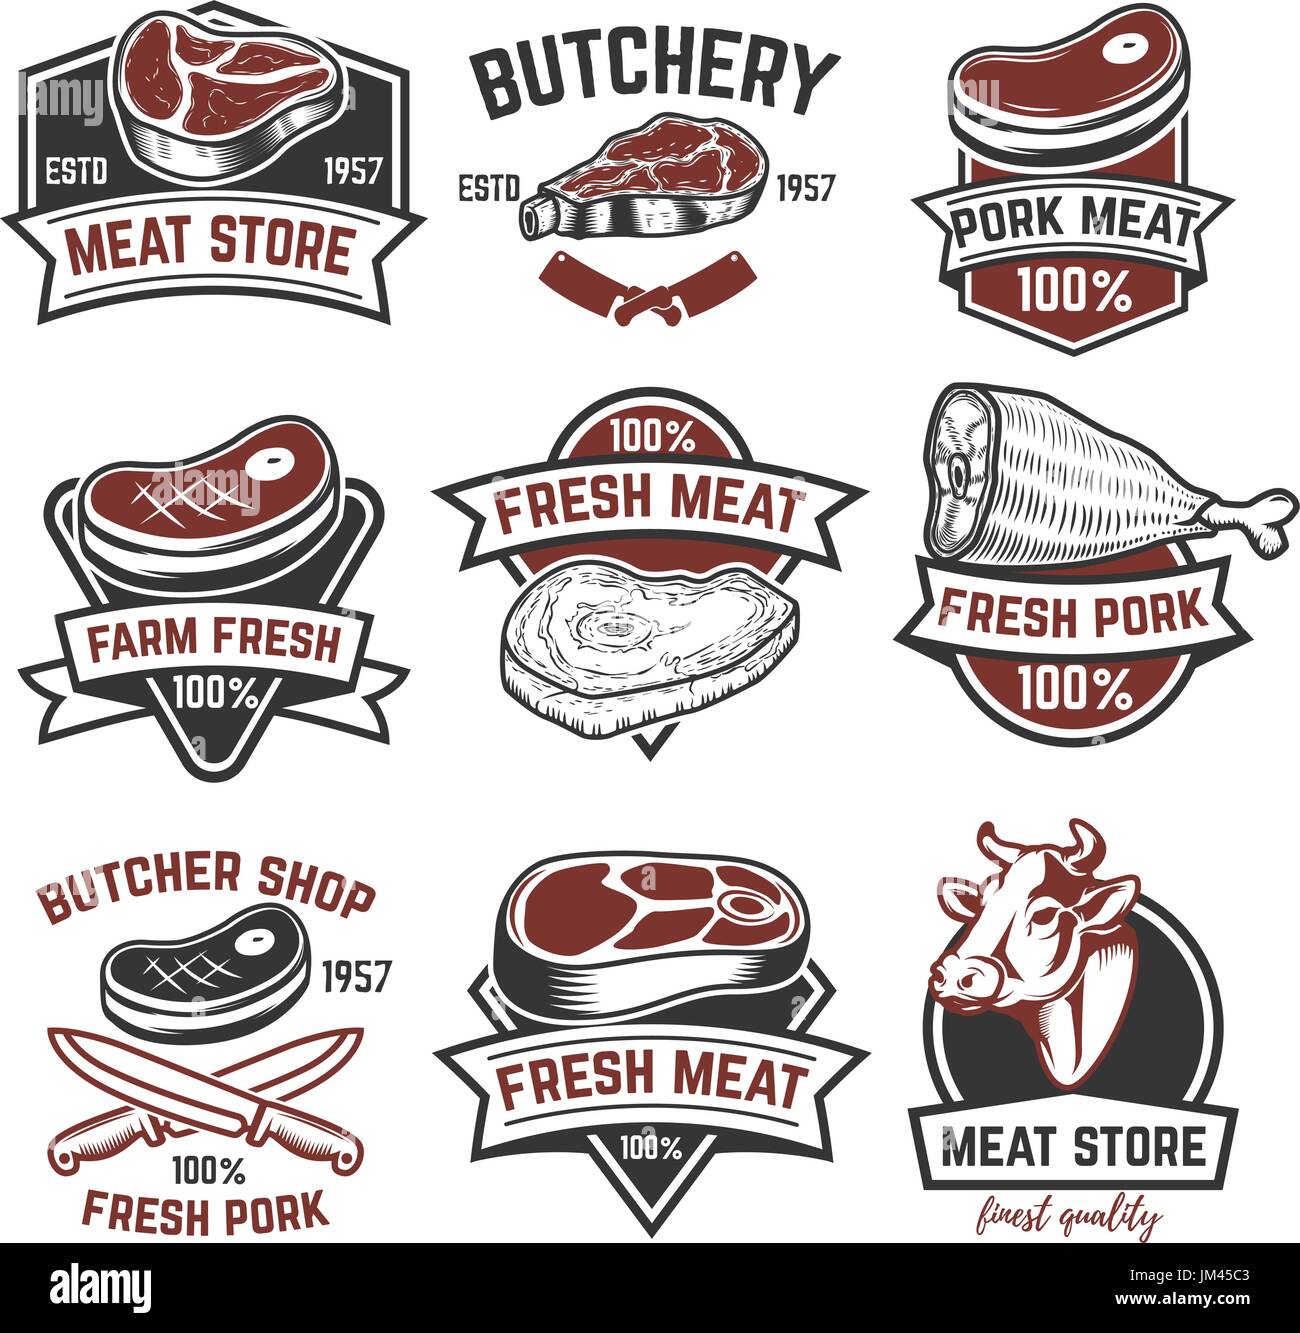 Set of meat store labels. Butchery. Design elements for logo, label, emblem, sign, brand mark. Vector illustration. Stock Vector